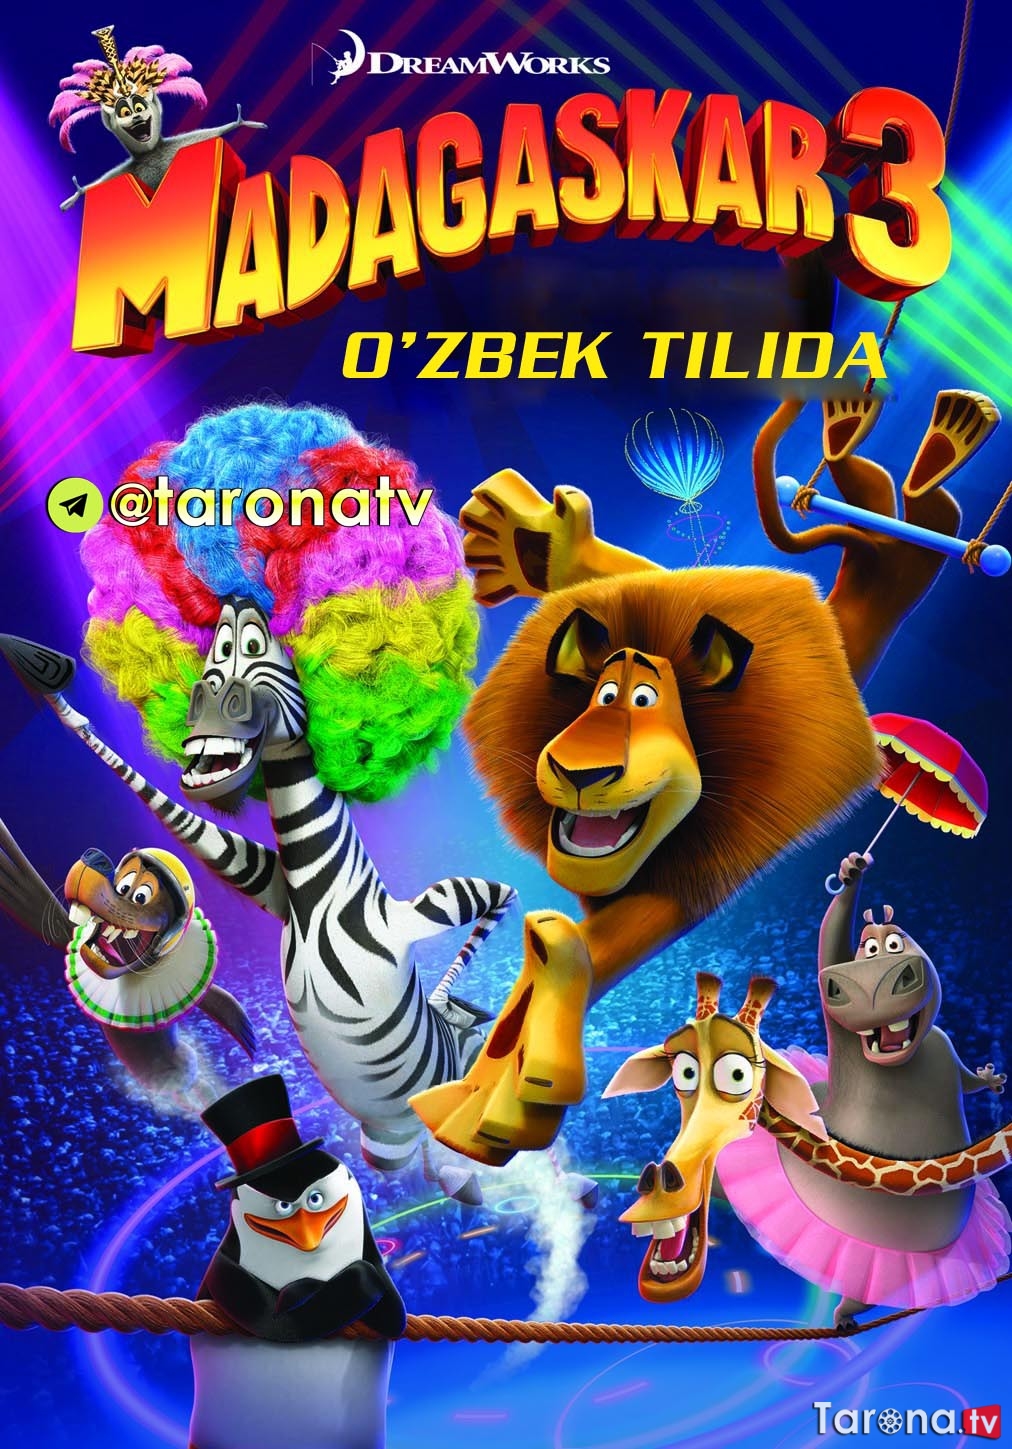 Madagaskar 3 (Multfilm, O'zbek tilida) 2012